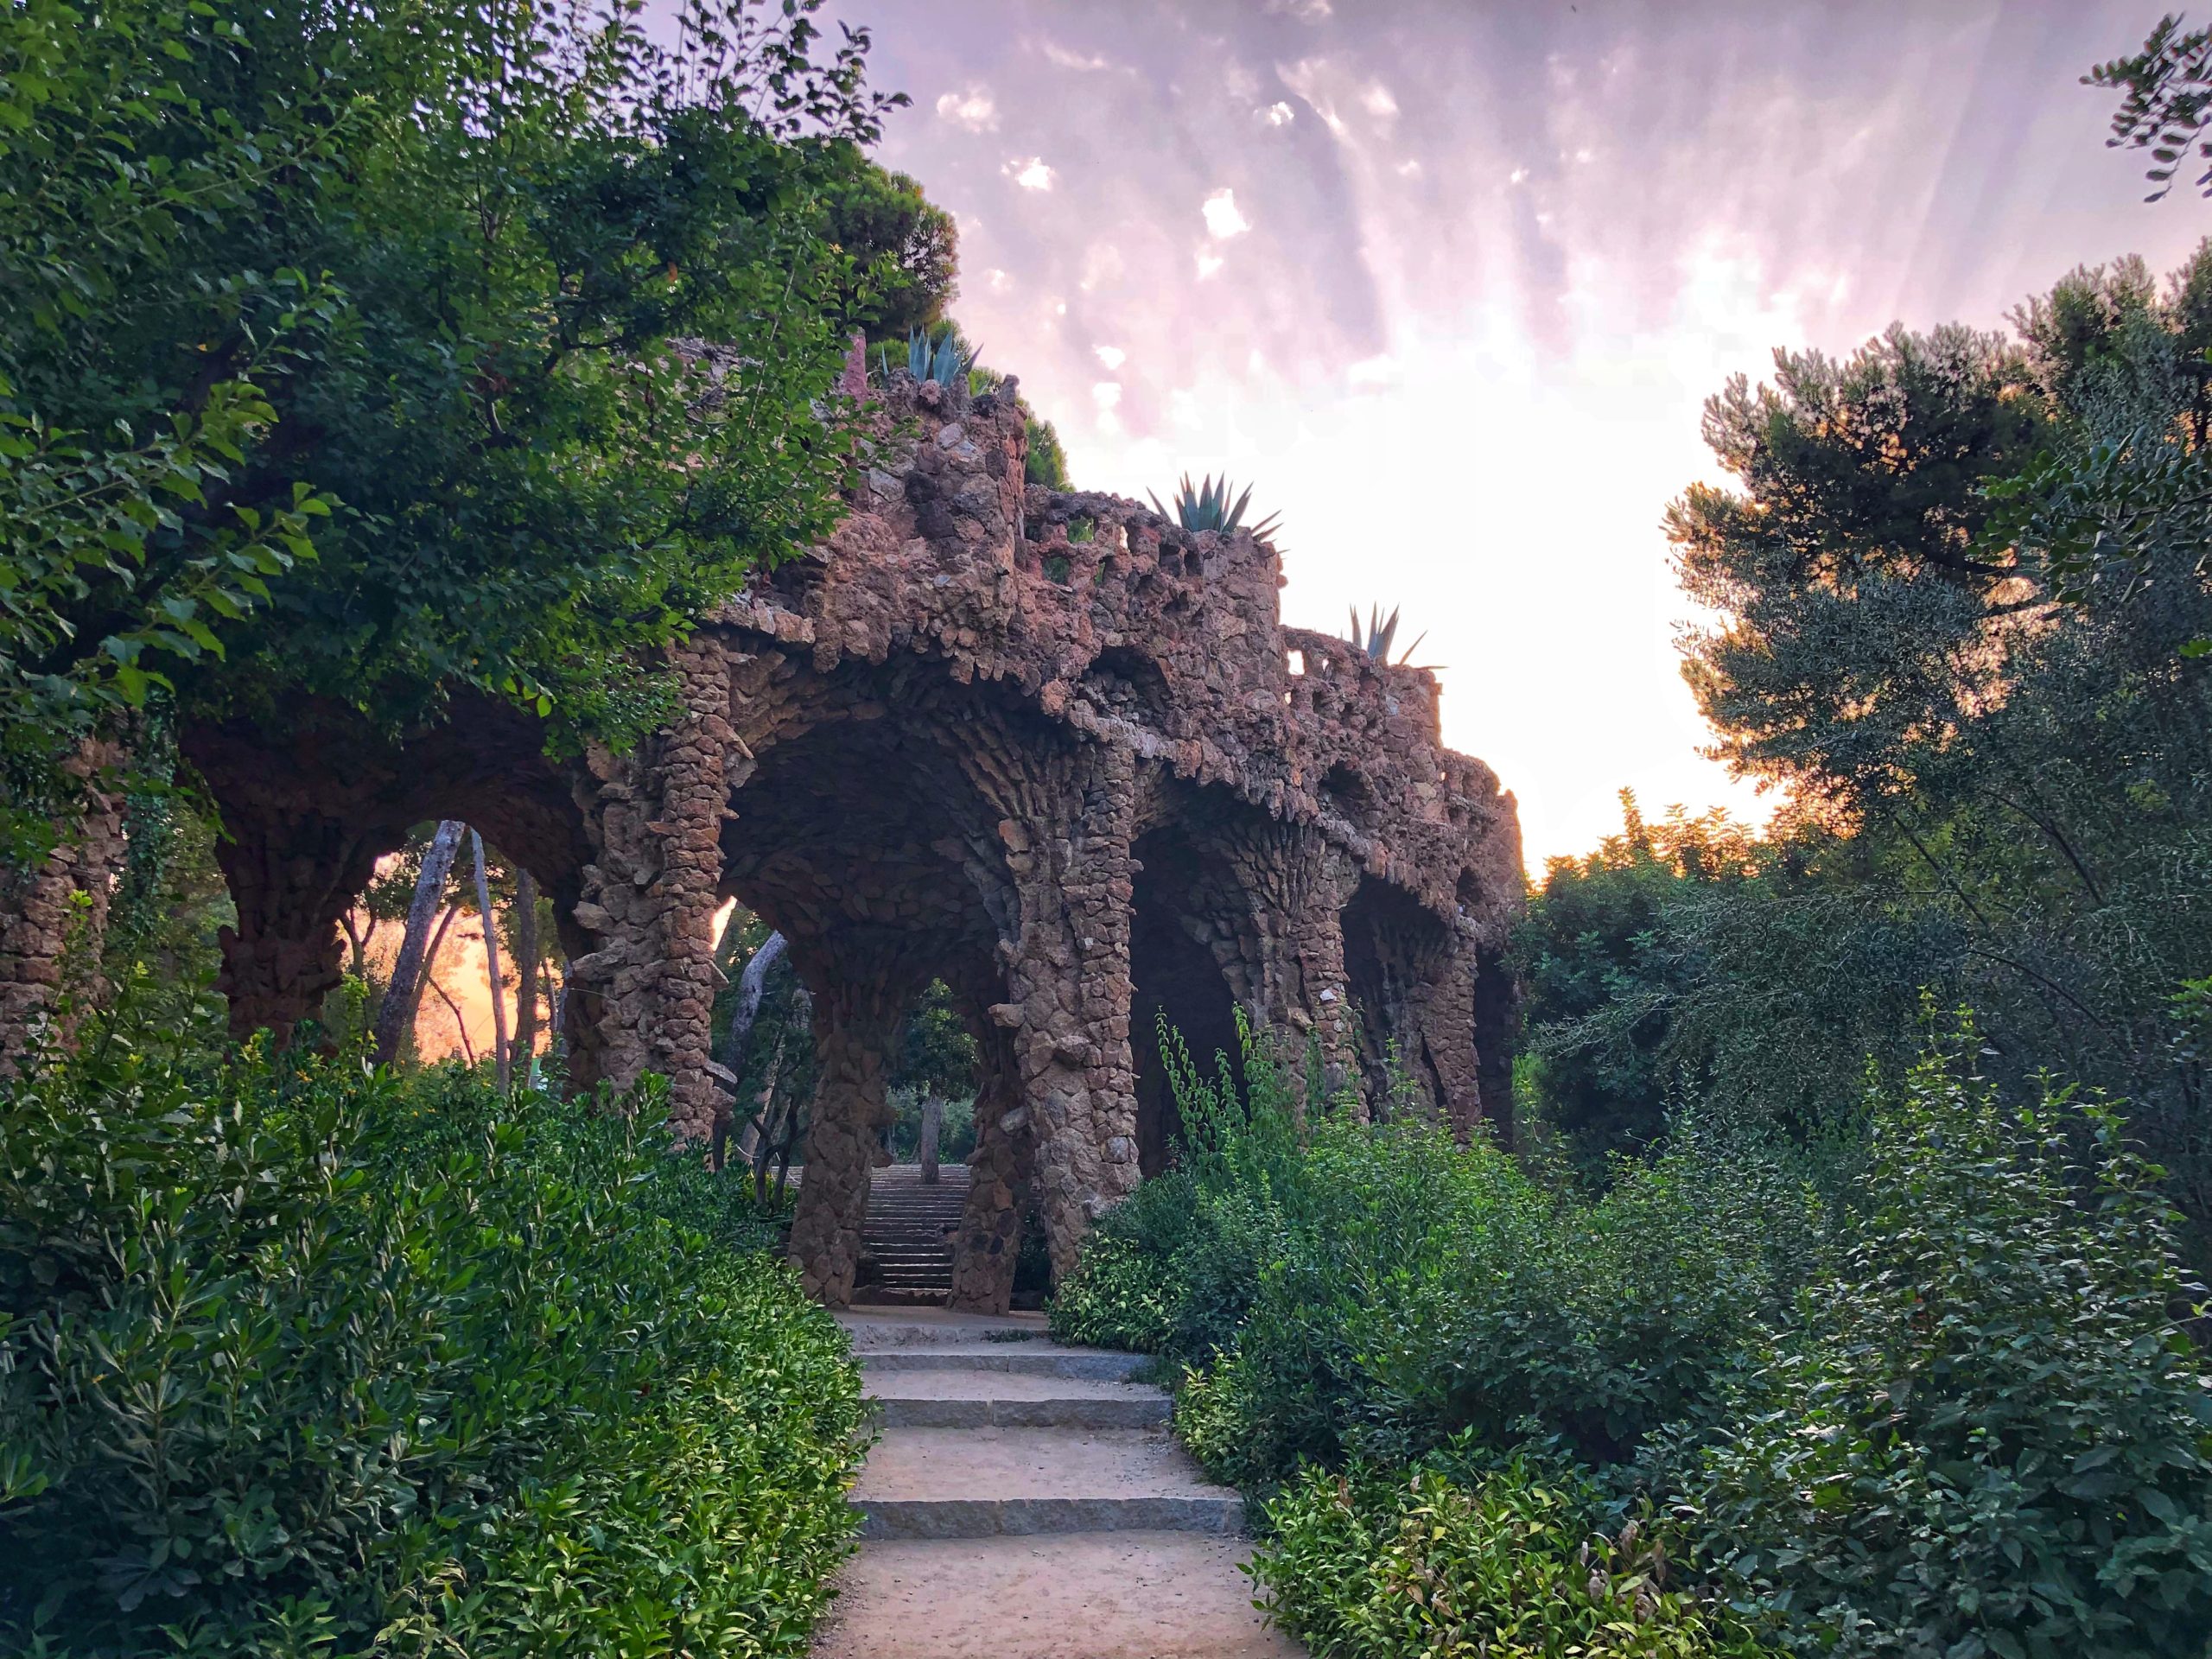 Power of Gaudi